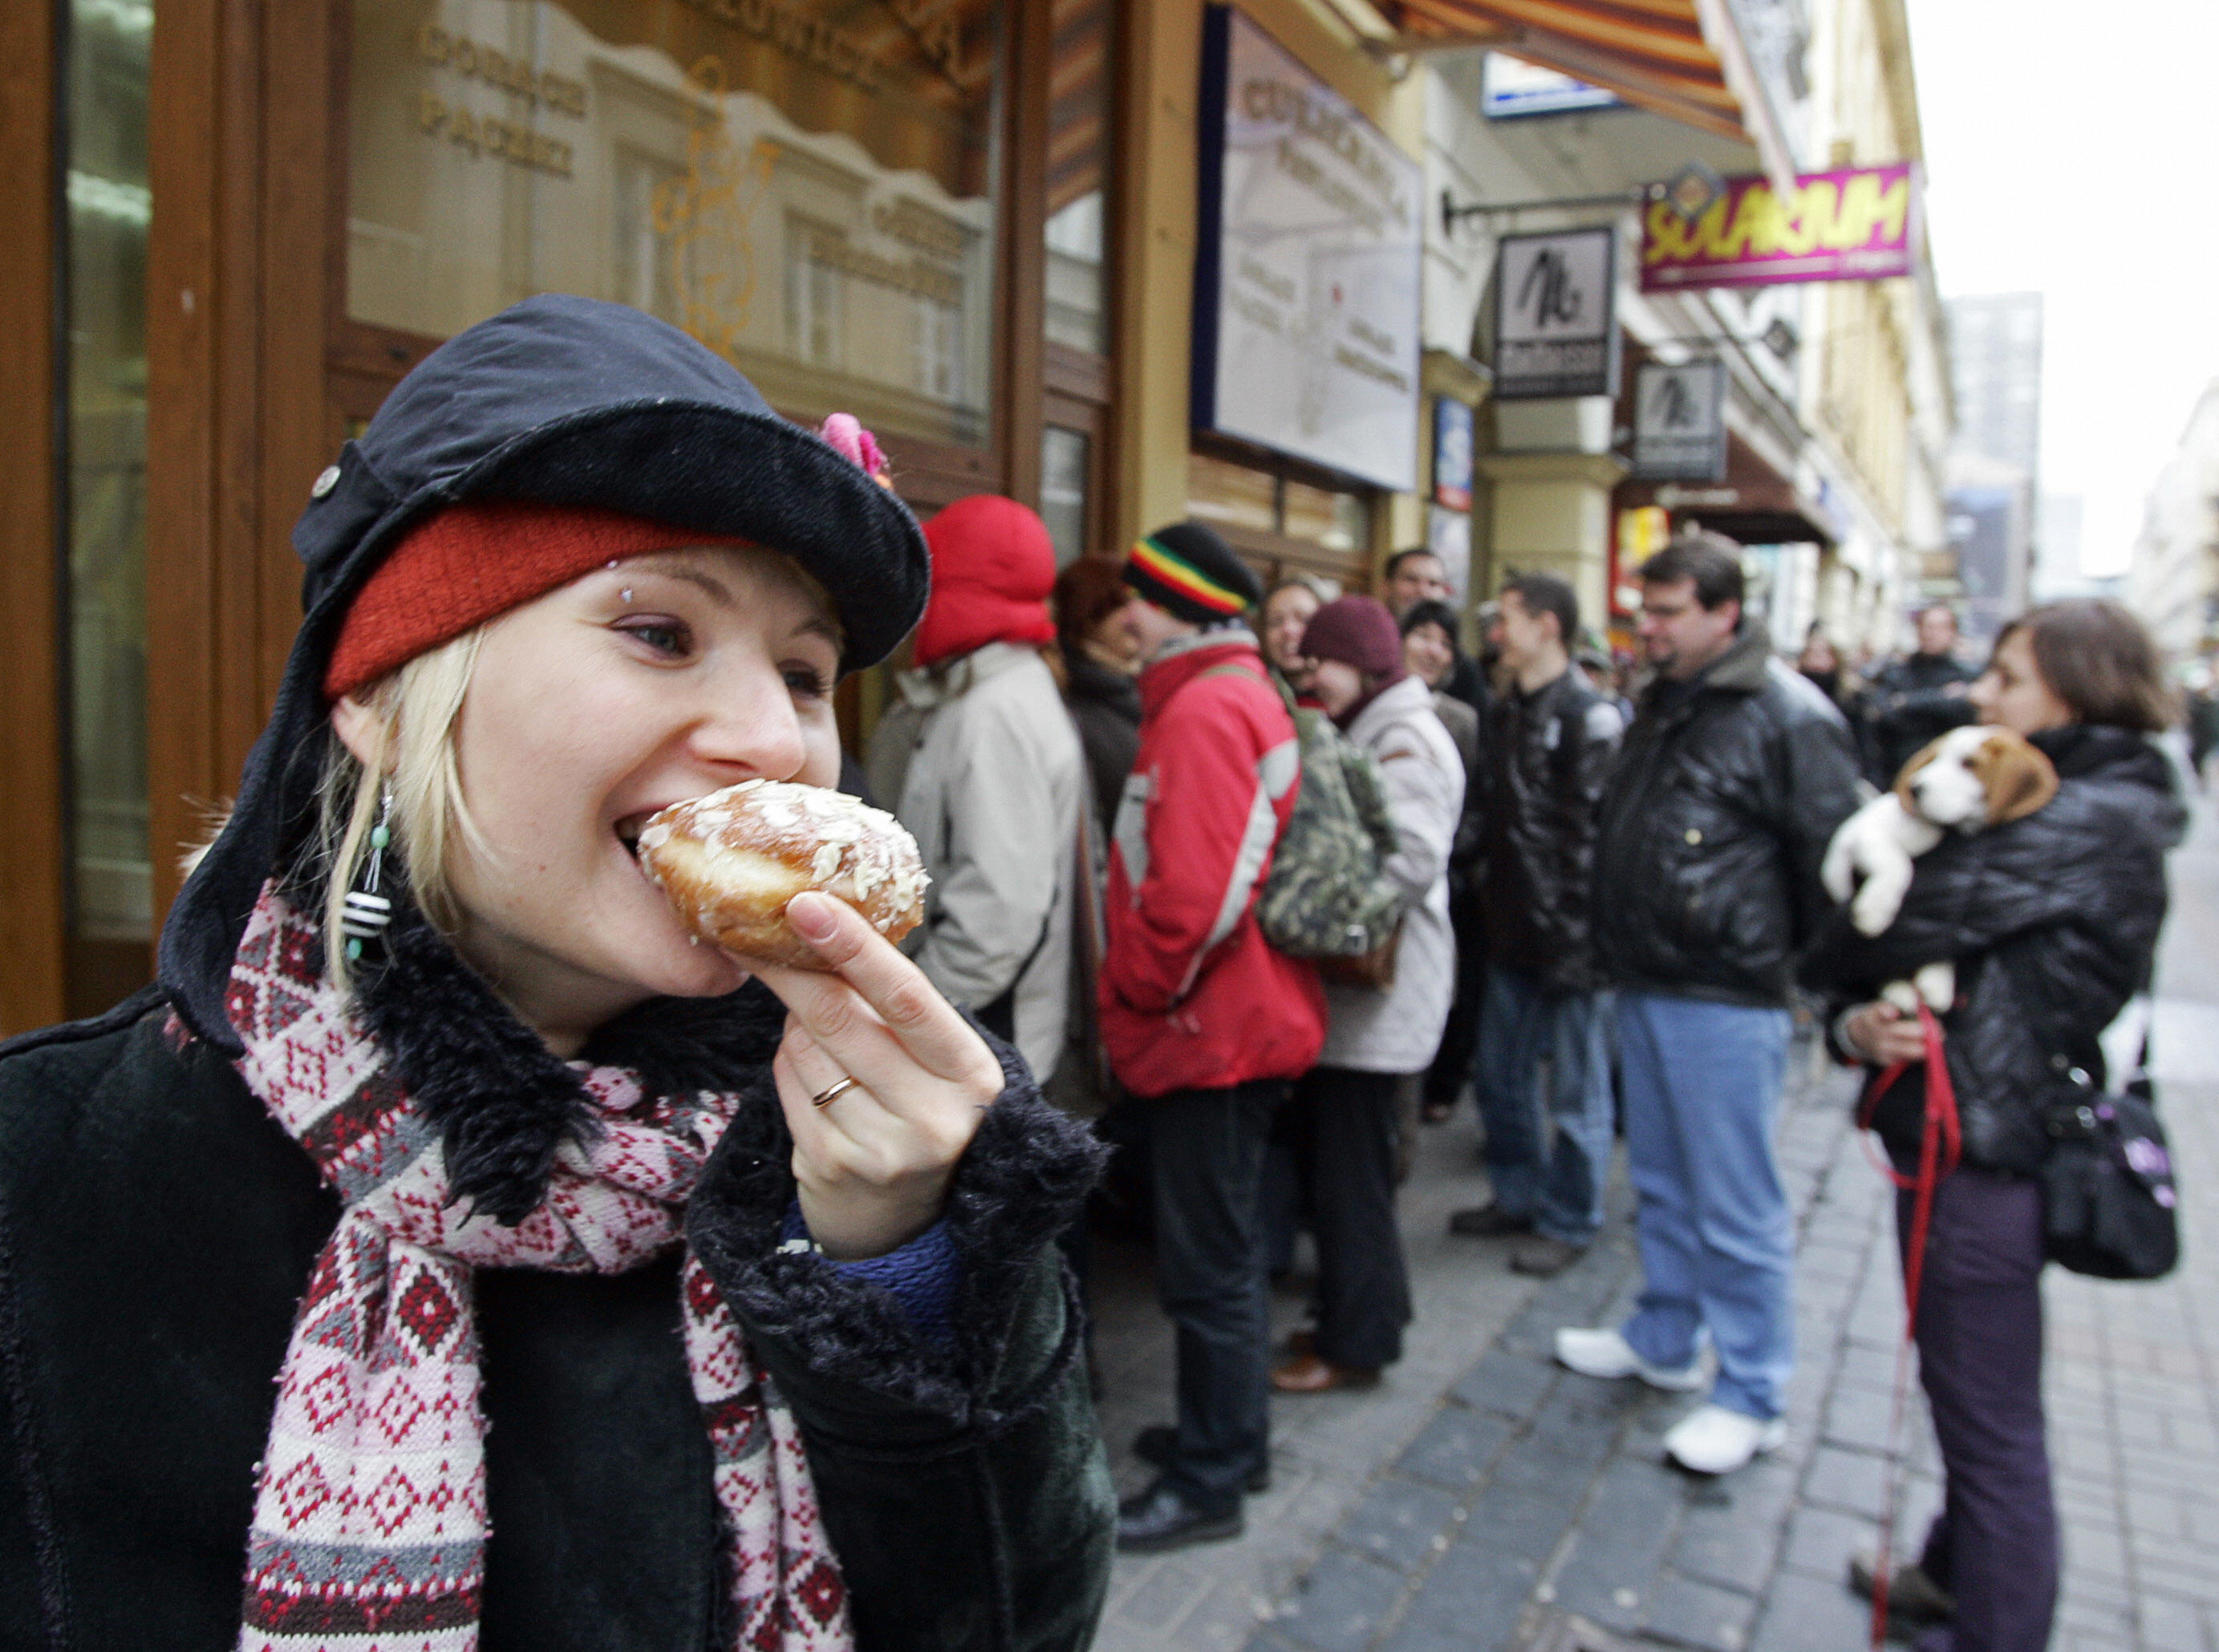 A girl eats a doughnut as other customer